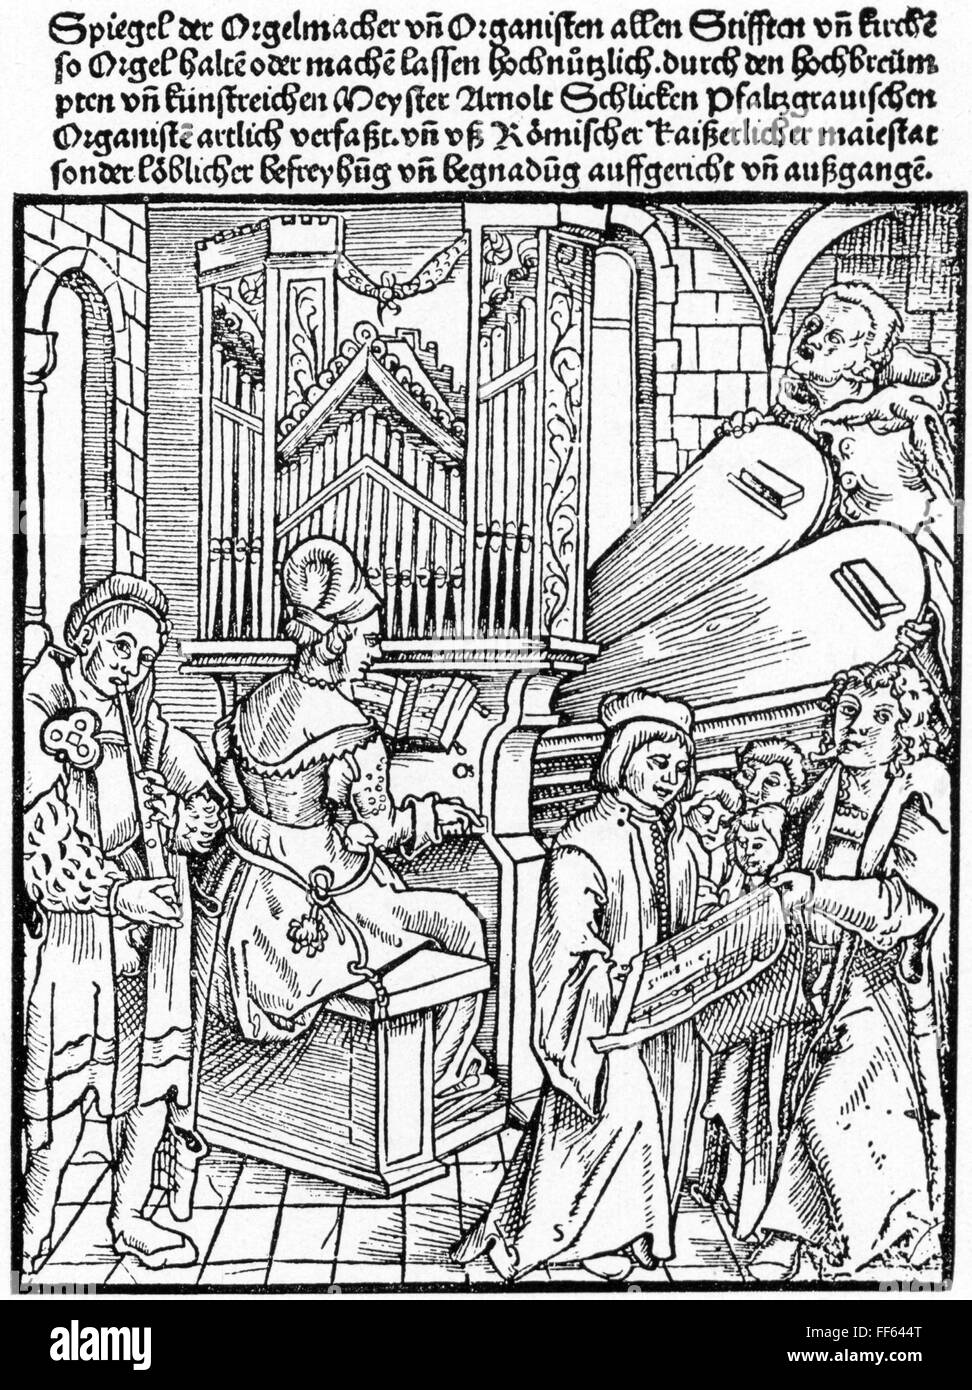 Musik, Instrument, Keyboard, Orgel, Holzschnitt, 'Orgel der Orgelmacher und Orgelspieler' von Arnold Schlick, Speyer, 1511, Zusatz-Rechte-Clearences-nicht vorhanden Stockfoto